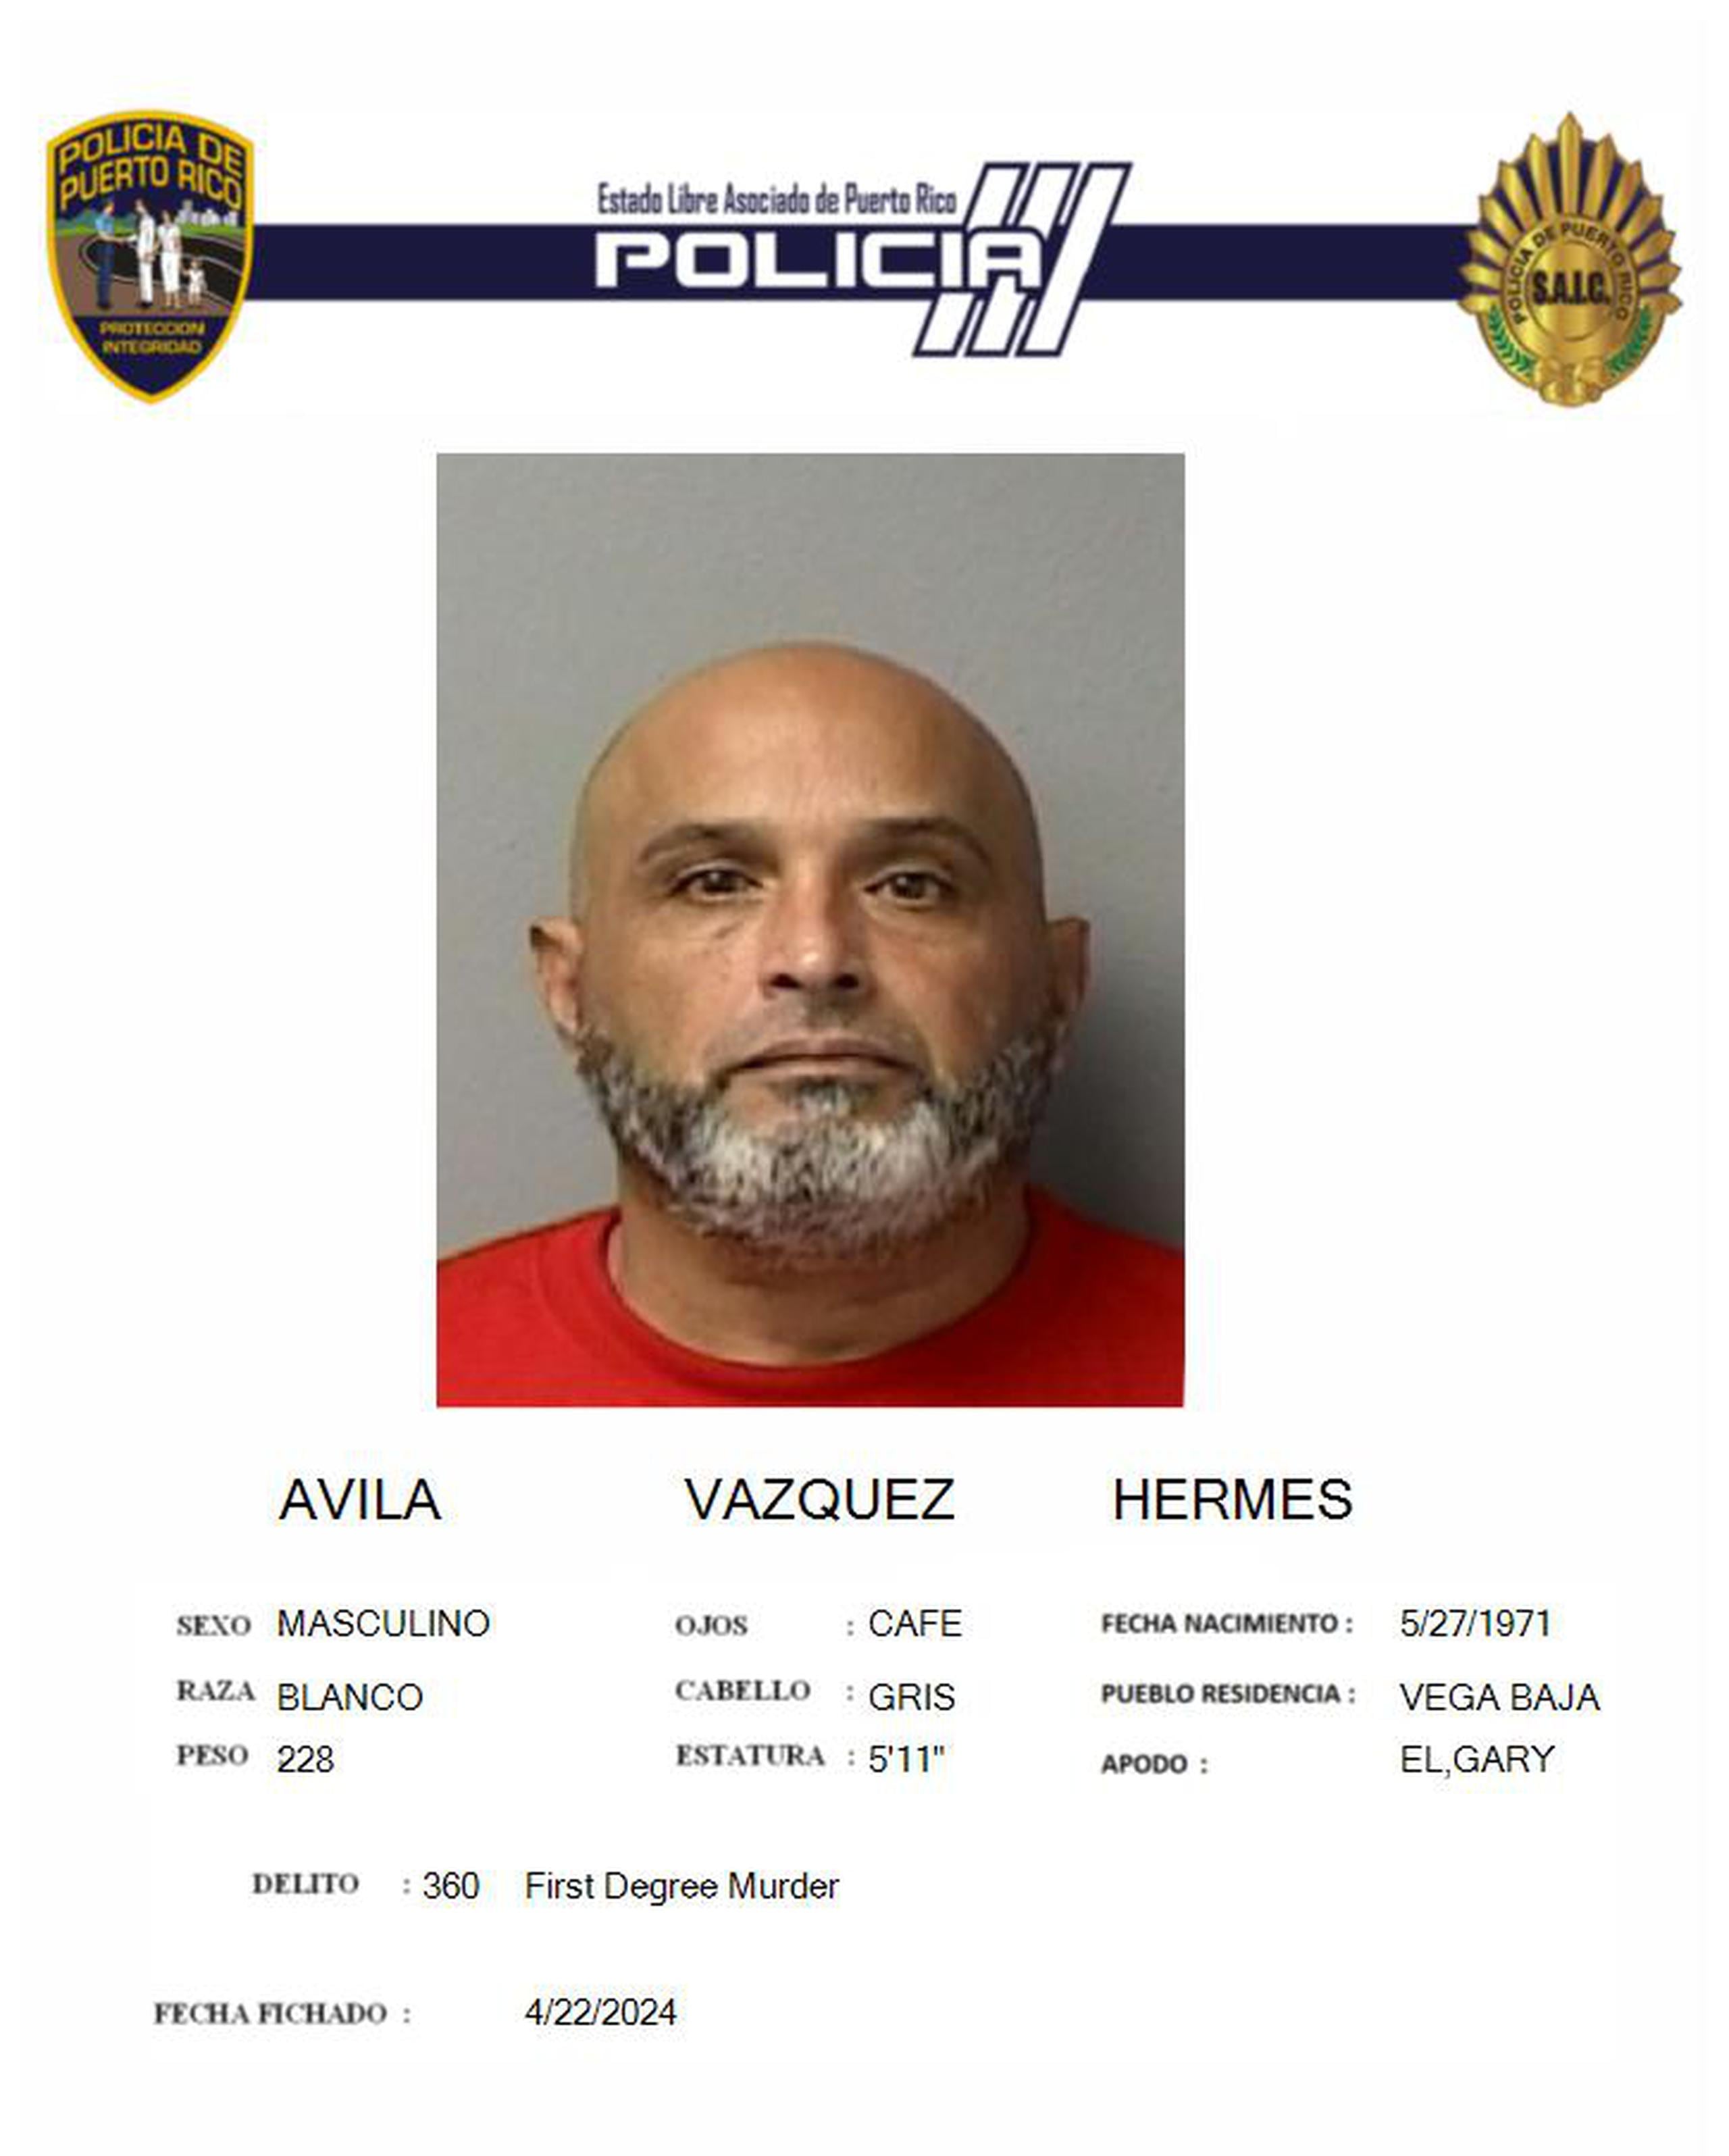 Hermes Ávila Vázquez de 52 años, enfrenta cargos de feminicidio, hurto de un vehículo, destrucción de evidencia y violación al artículo 6.6 (posesión de un arma blanca) de la Ley de Armas.